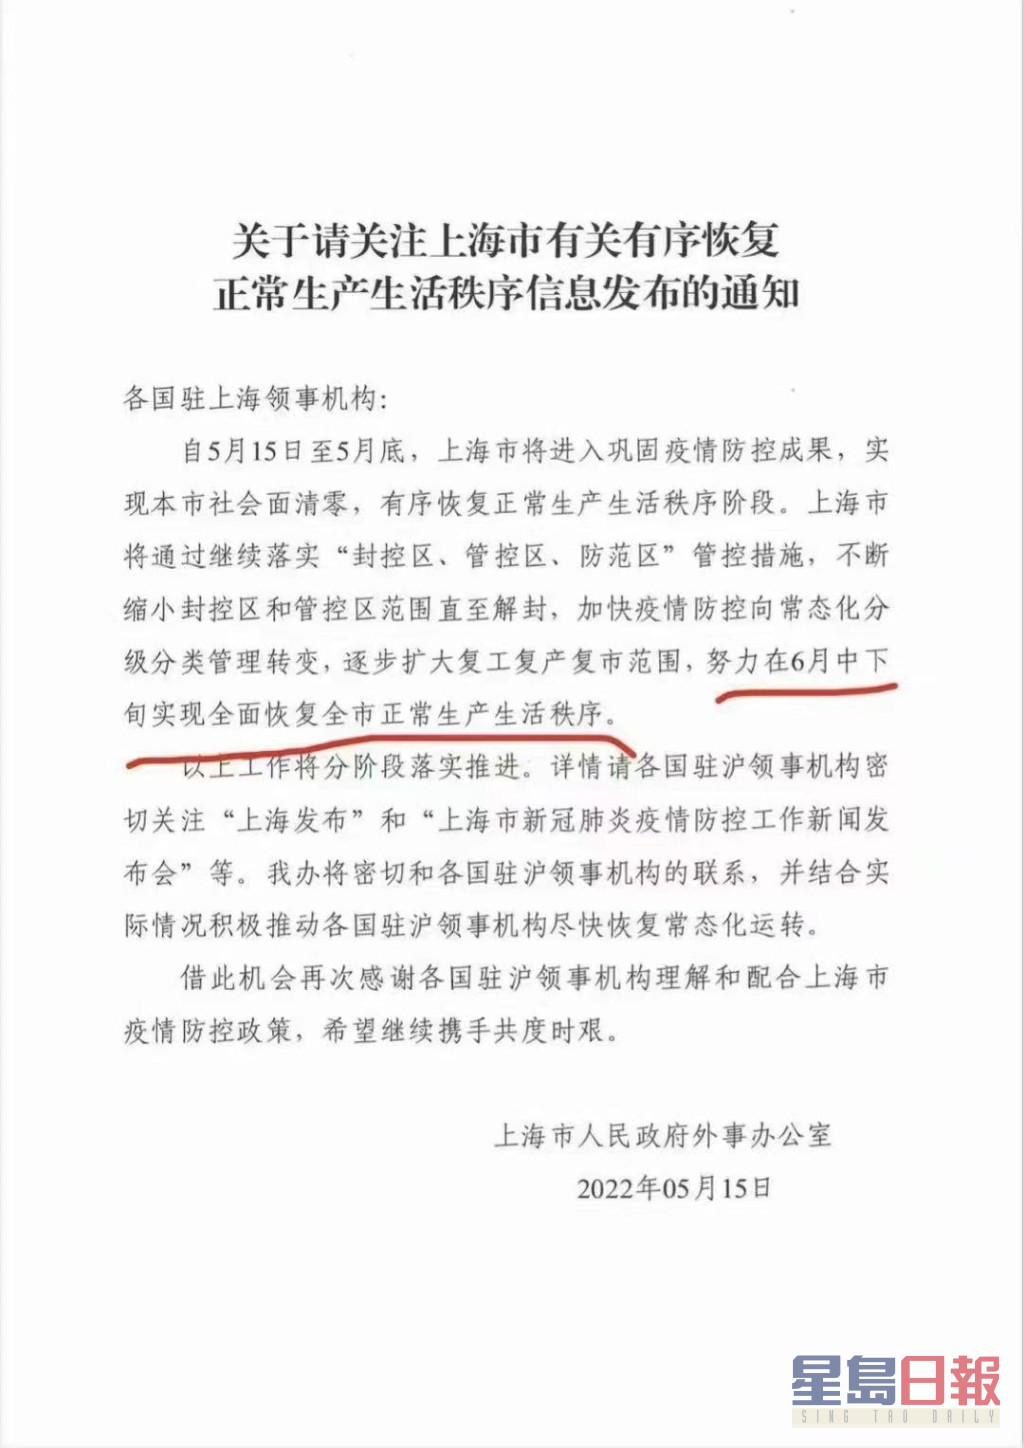 網上流傳的一份上海外事辦致各國領事館信函，稱努力在六月中下旬實現全面恢復正常生產生活秩序。